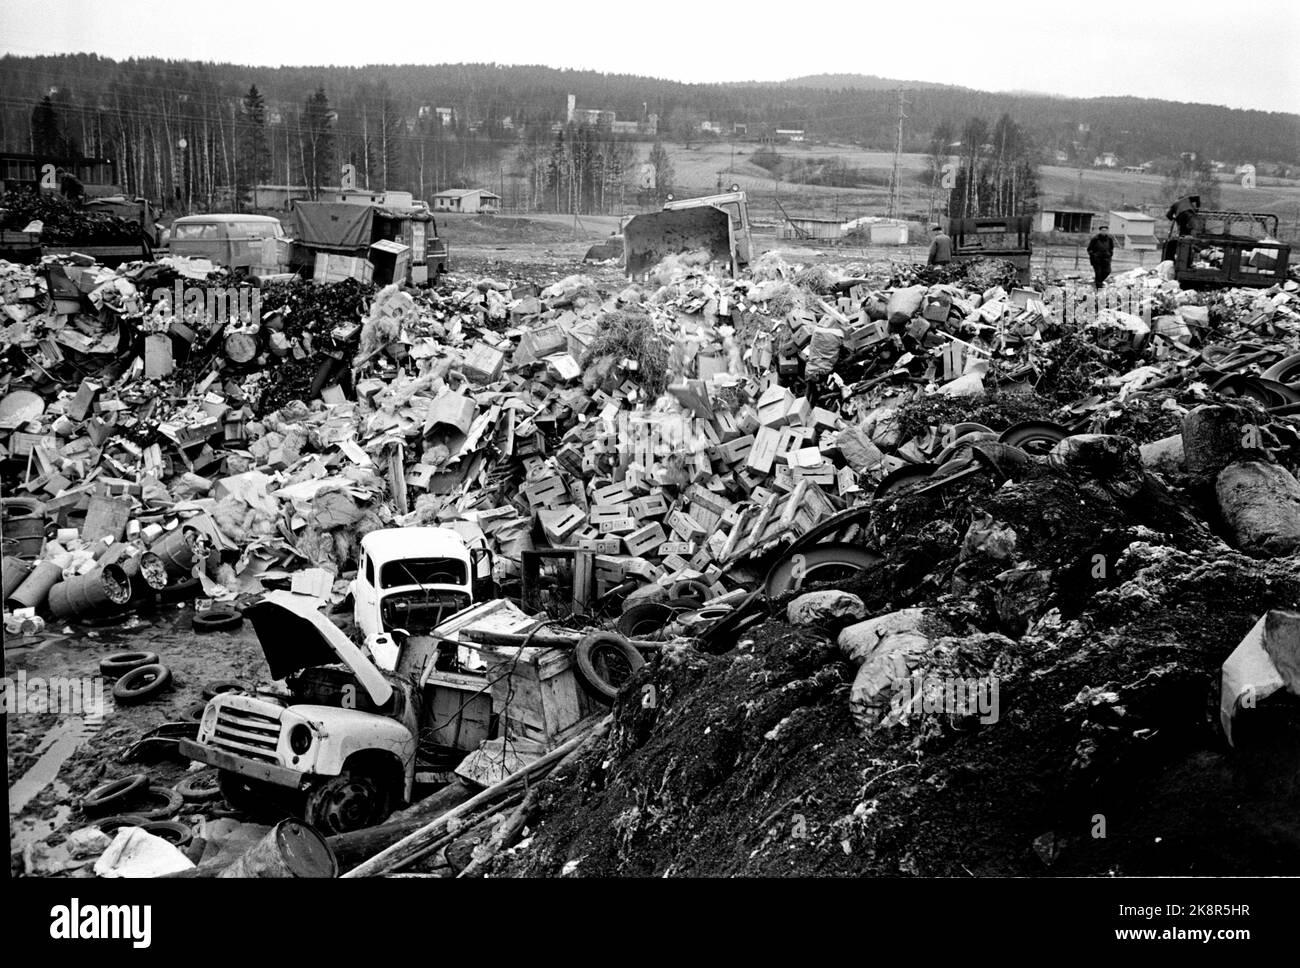 Oslo im Herbst 1965. Oslo Cleaning Work hat 104 Müllwagen, und Reinigungskräfte leeren zwei- bis dreimal pro Woche 70.000 Mülltonnen, das sind fast 90.000 Tonnen Haushaltsmüll pro Jahr. Davon sind 10-12 Tonnen Lebensmittelrückstände, und ein nicht unbedeutender Teil sind gefährliche Abfälle. Der größte Teil der Abfälle landet auf den Füllungen in Grorud und Romsås, während Sprengstoffe und brennbare Substanzen wie Farbe, Lack und Chemikalien auf dem Alfaset-Betrieb verbrannt werden und der Rauch sich wie eine dicke, schwarze Wolke über Alnabru absetzt. Foto: Sverre A Børretzen / Aktuell / NTB Stockfoto